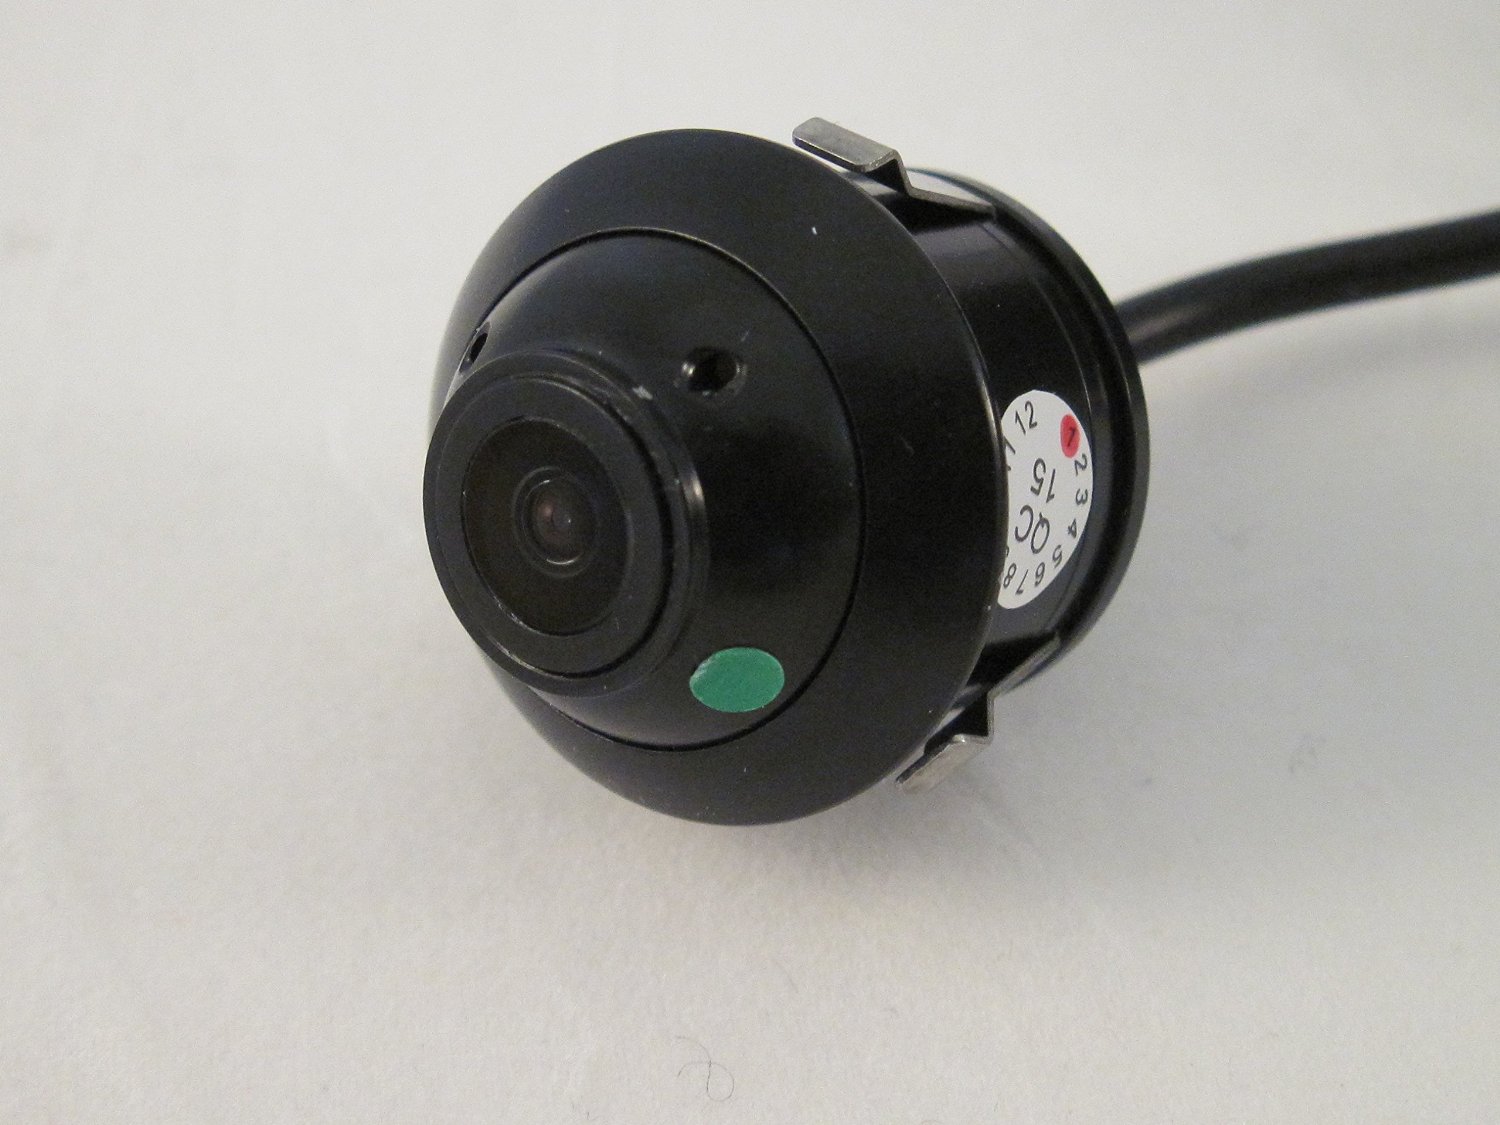 Back-up camera for flush keyhole mounting